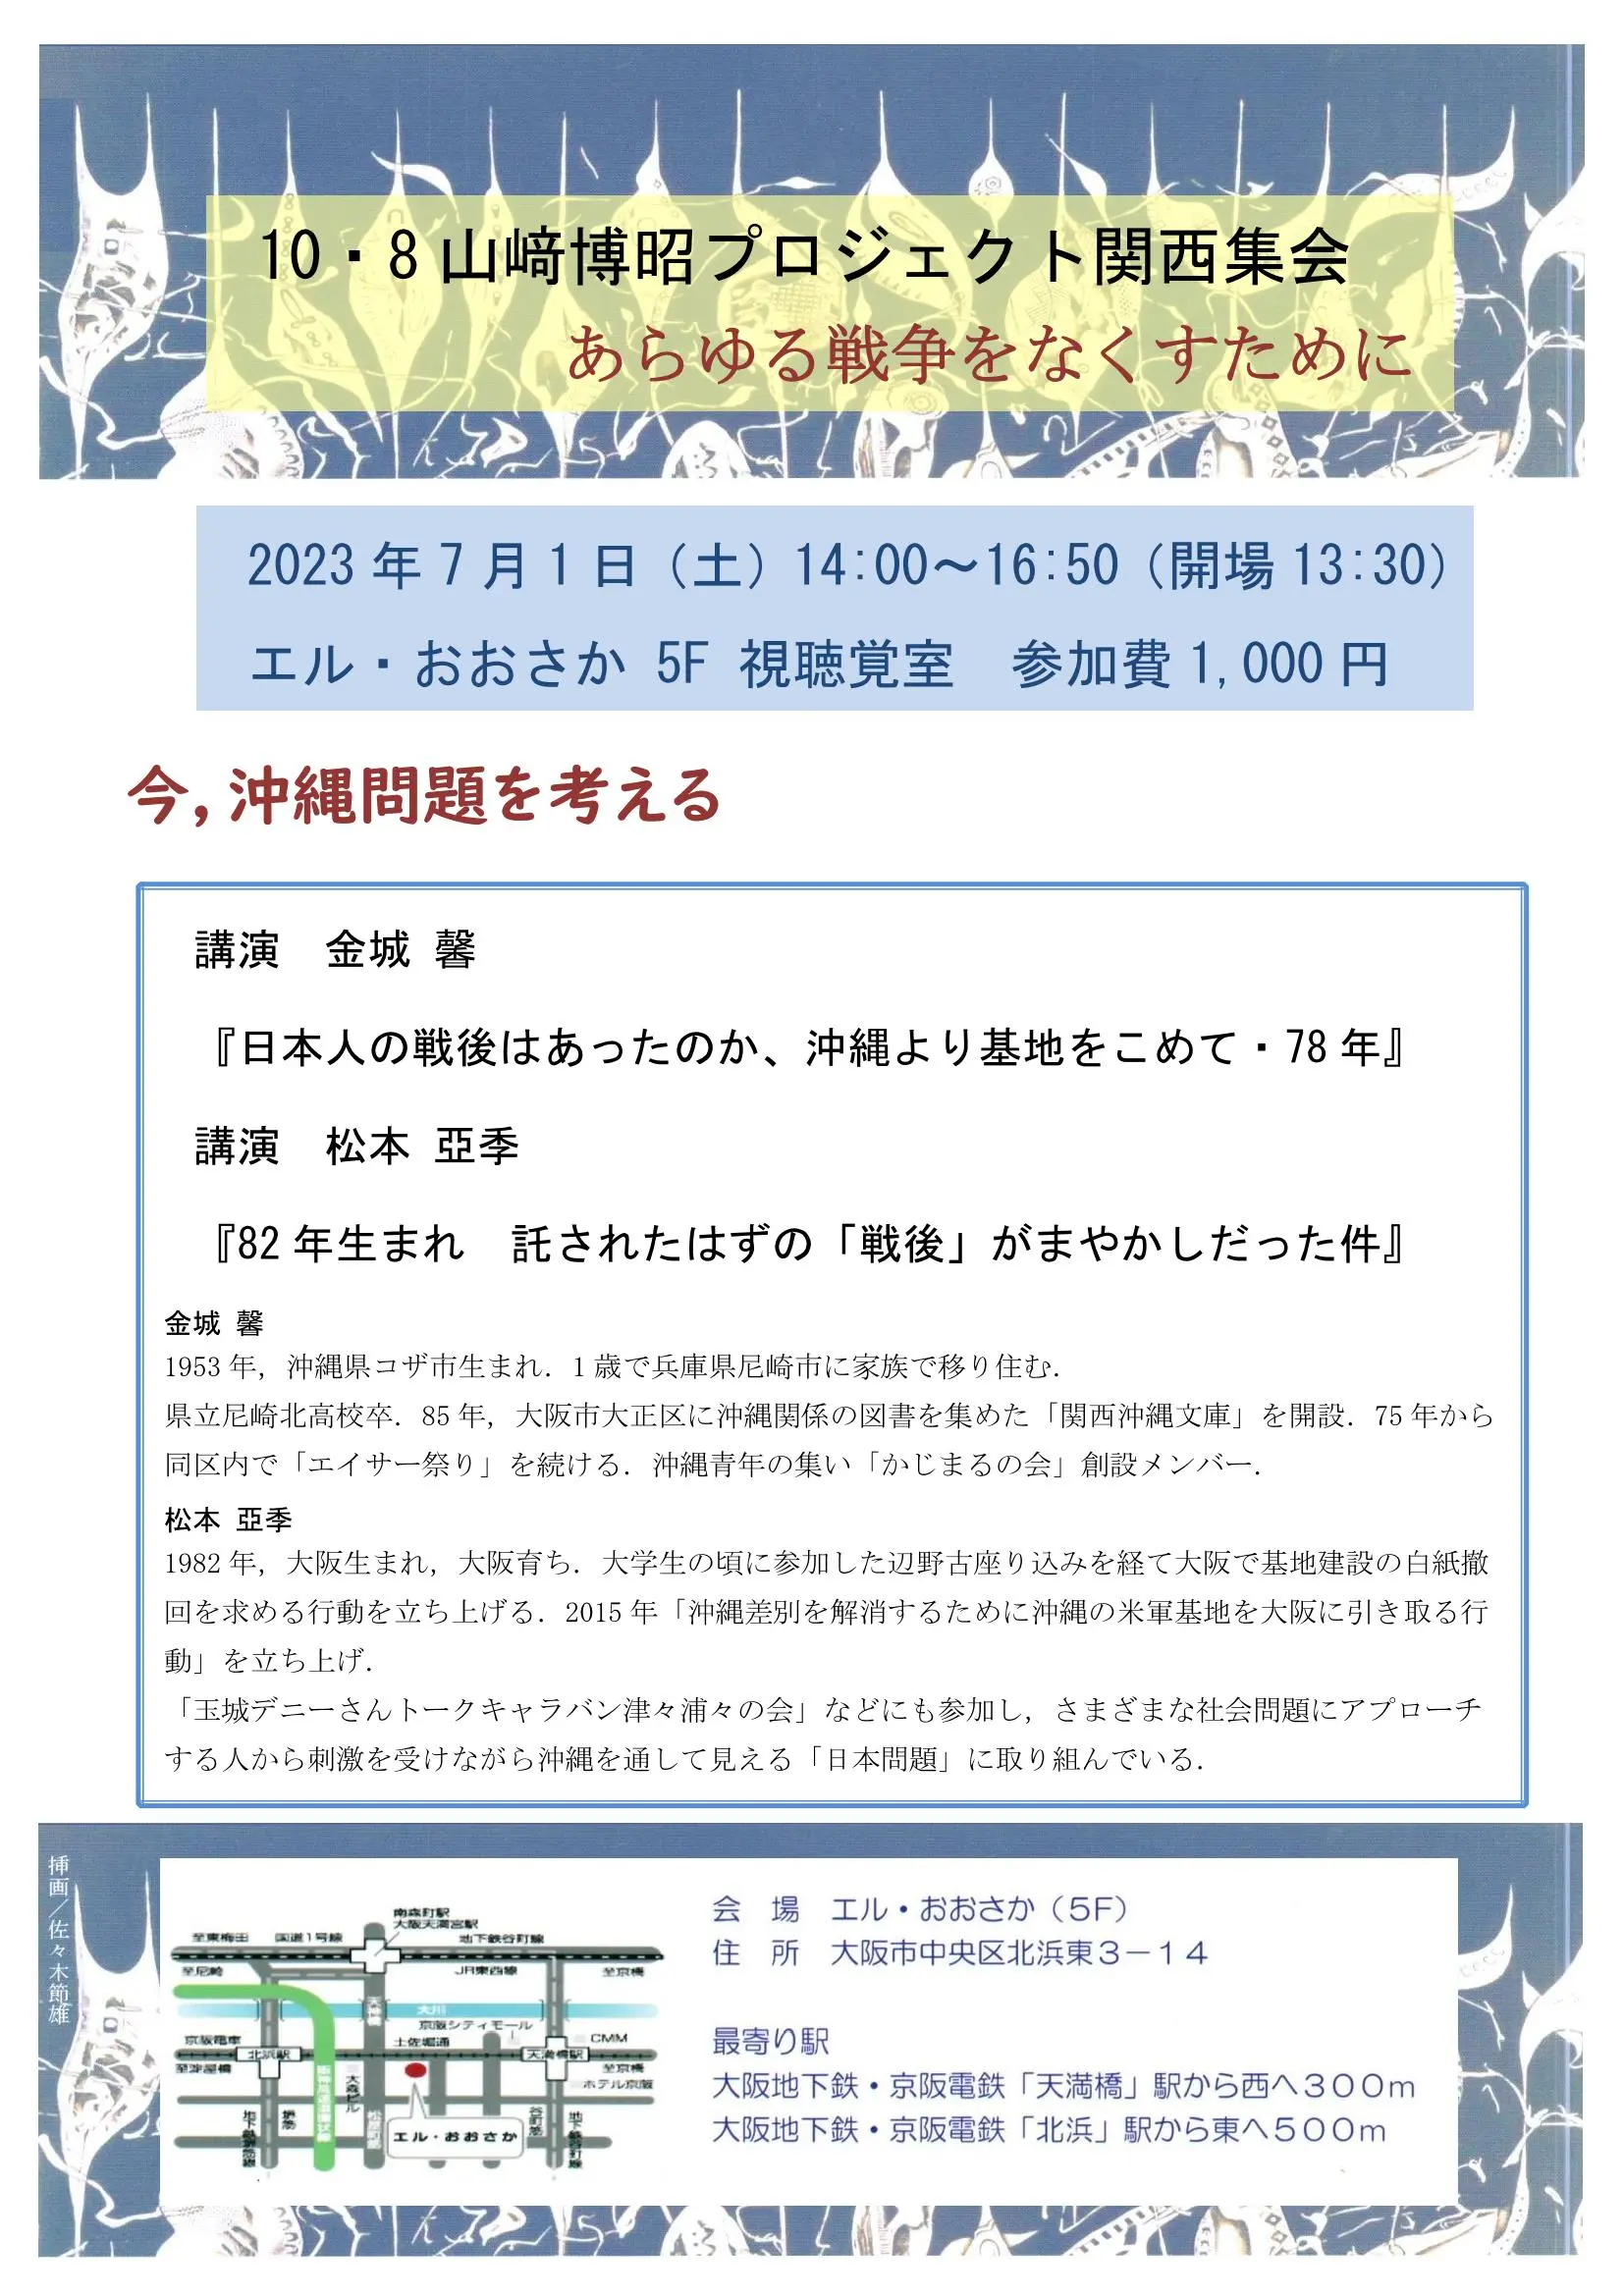 10・8山﨑博昭プロジェクト関西集会「今、沖縄を考える」